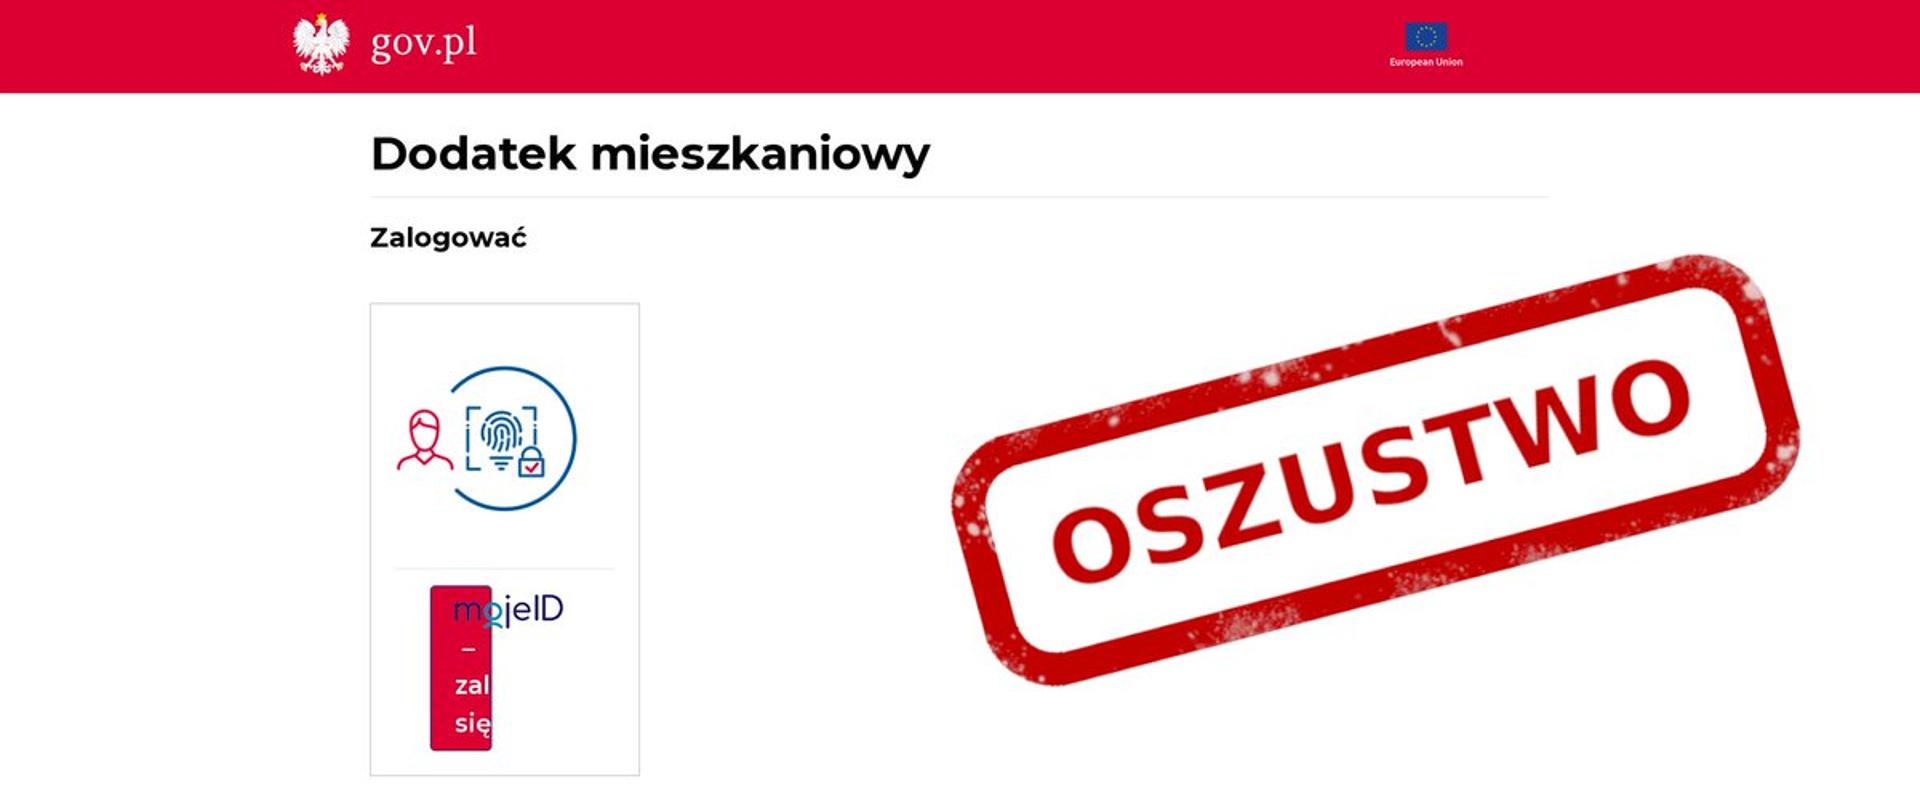 Zdjęcie fałszywej strony internetowej udającej serwis gov.pl po prawej stronie czerwony napis oszustwo